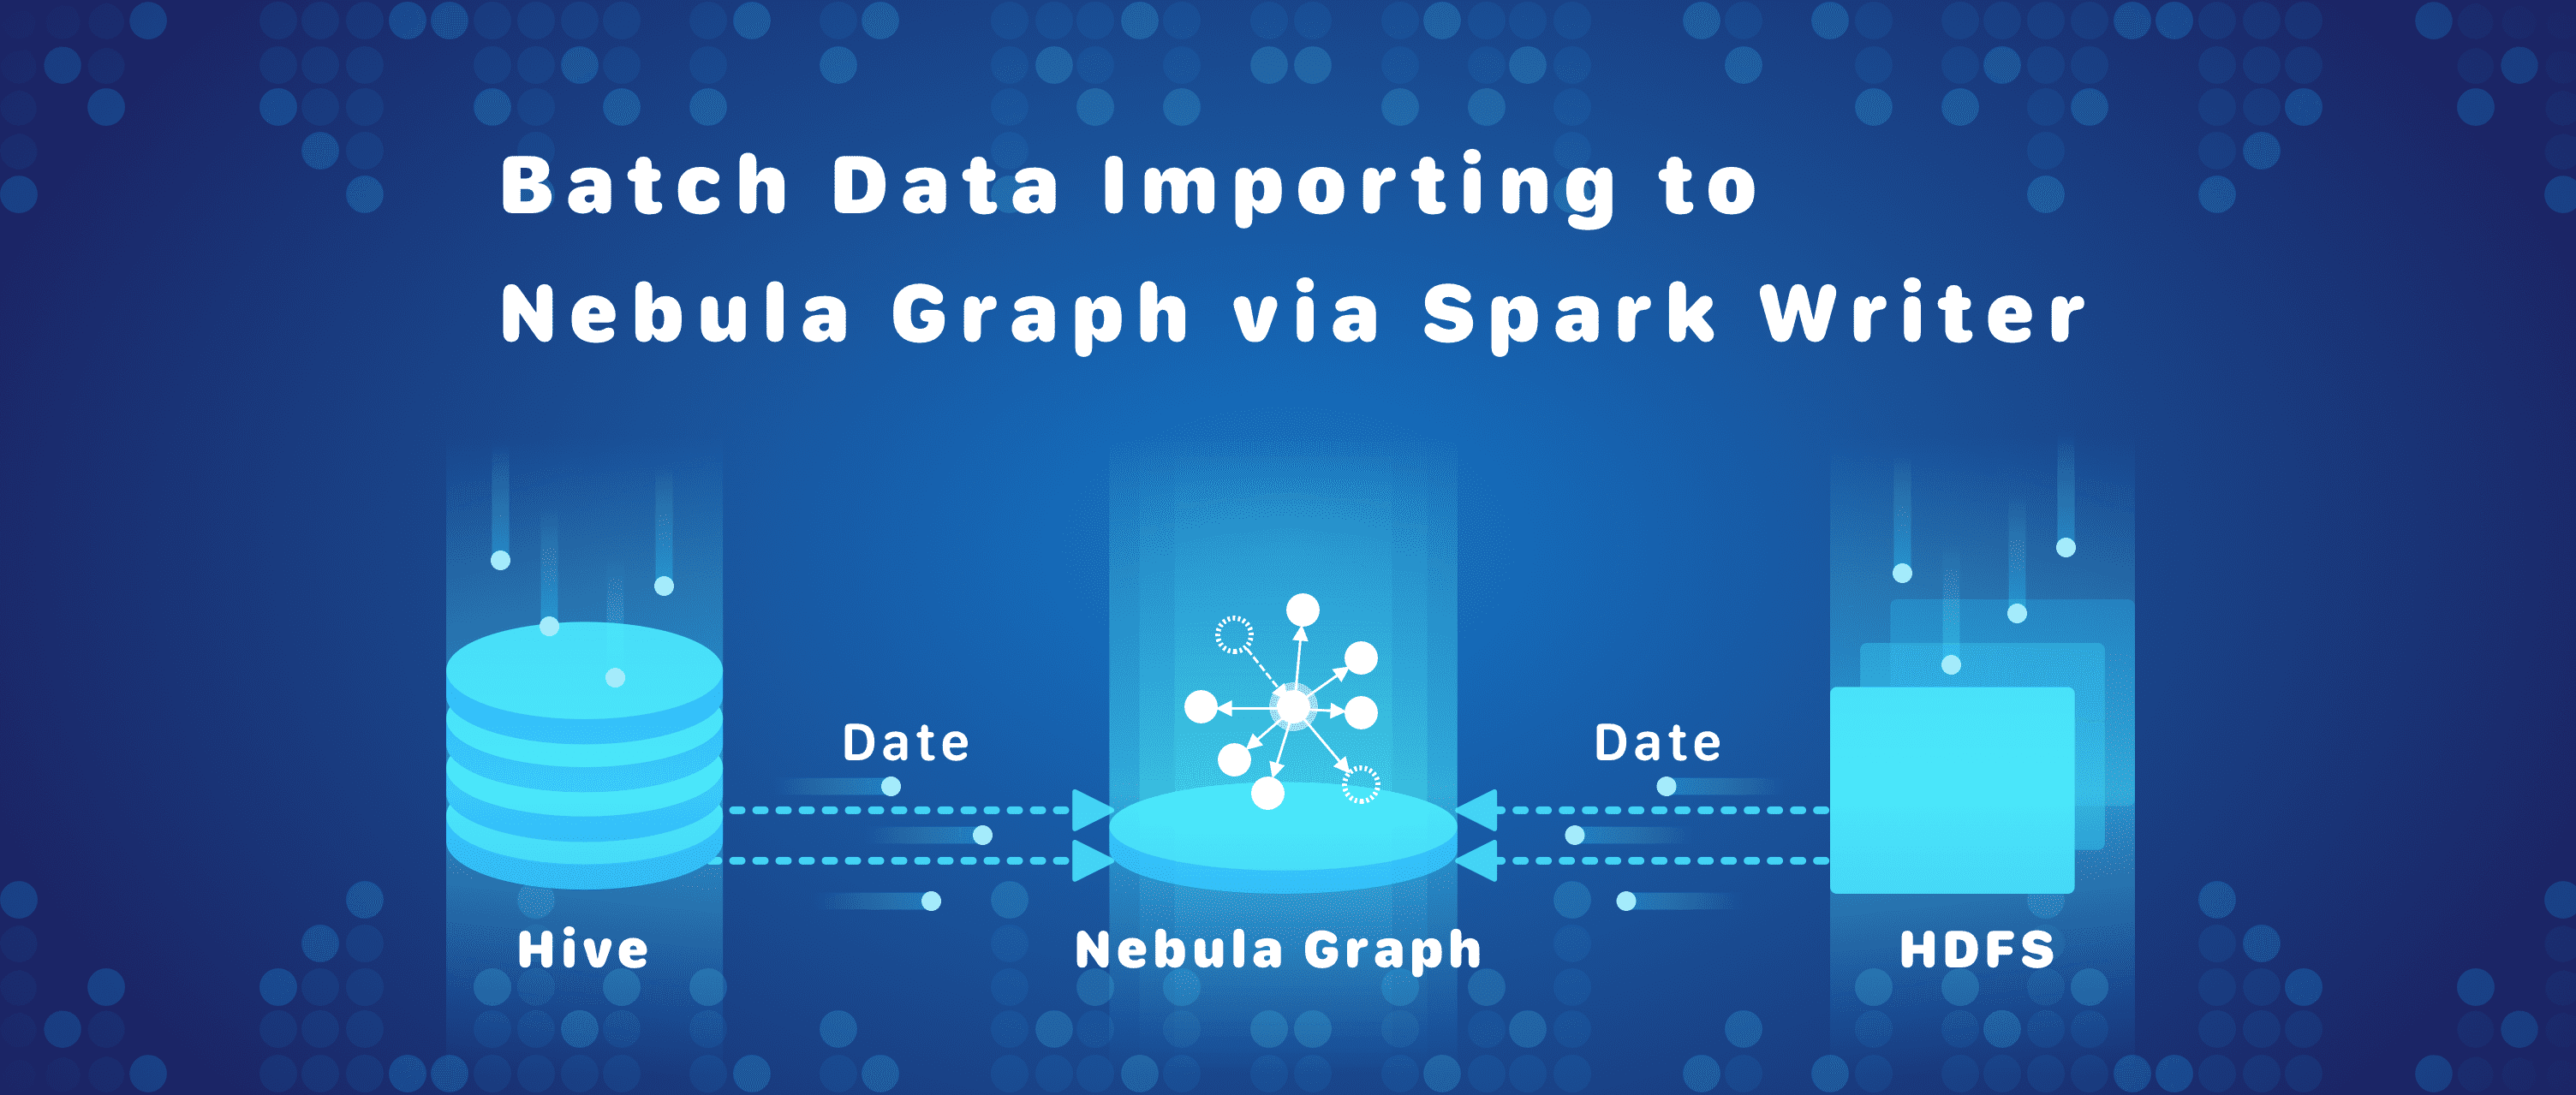 浅析图数据库 Nebula Graph 数据导入工具——Spark Writer